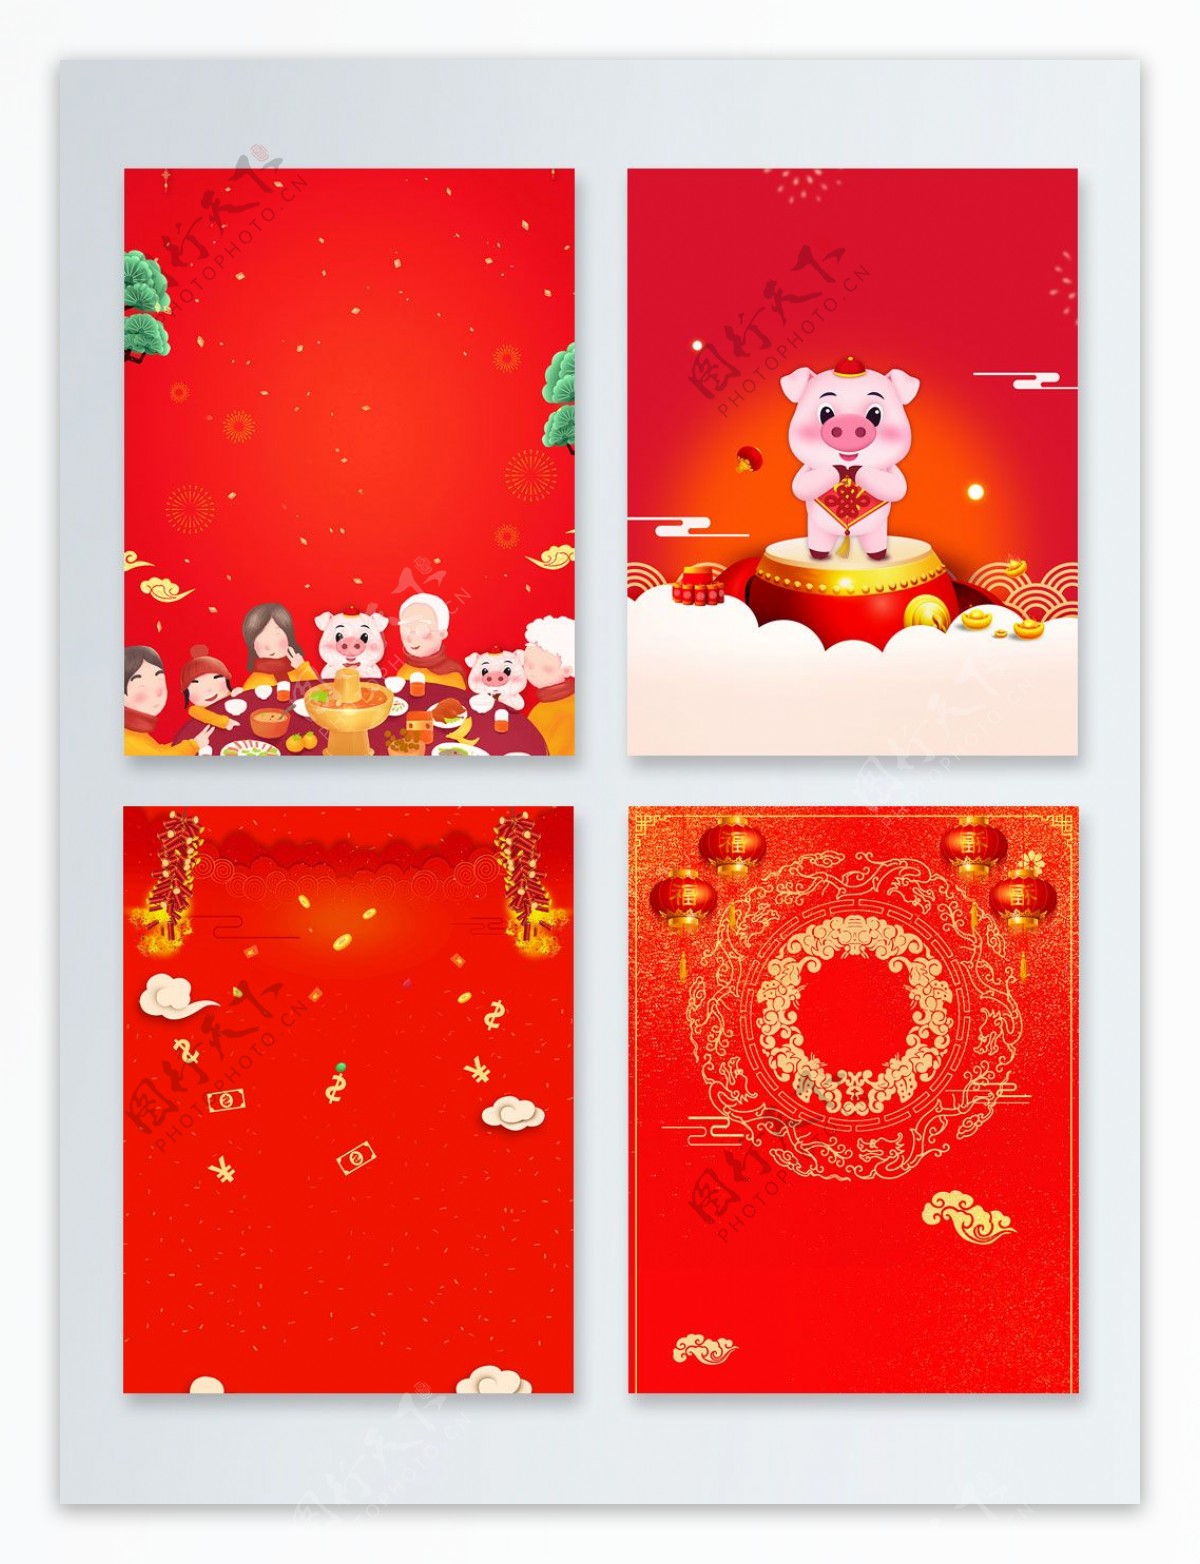 鞭炮传统节日新年快乐广告背景图